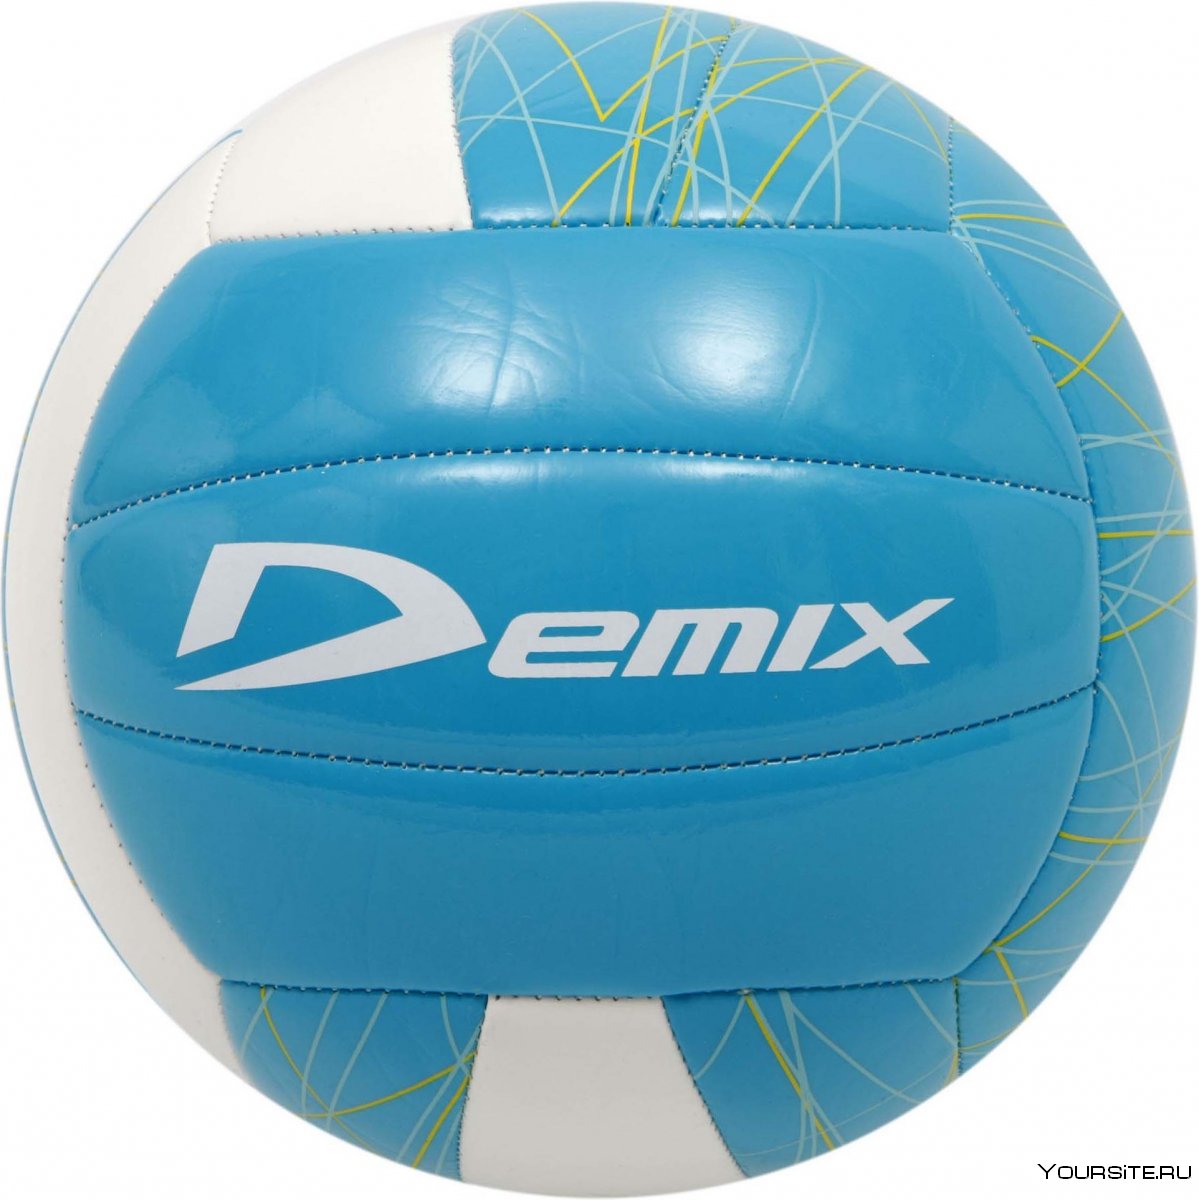 Пляжный мяч волейбол демикс